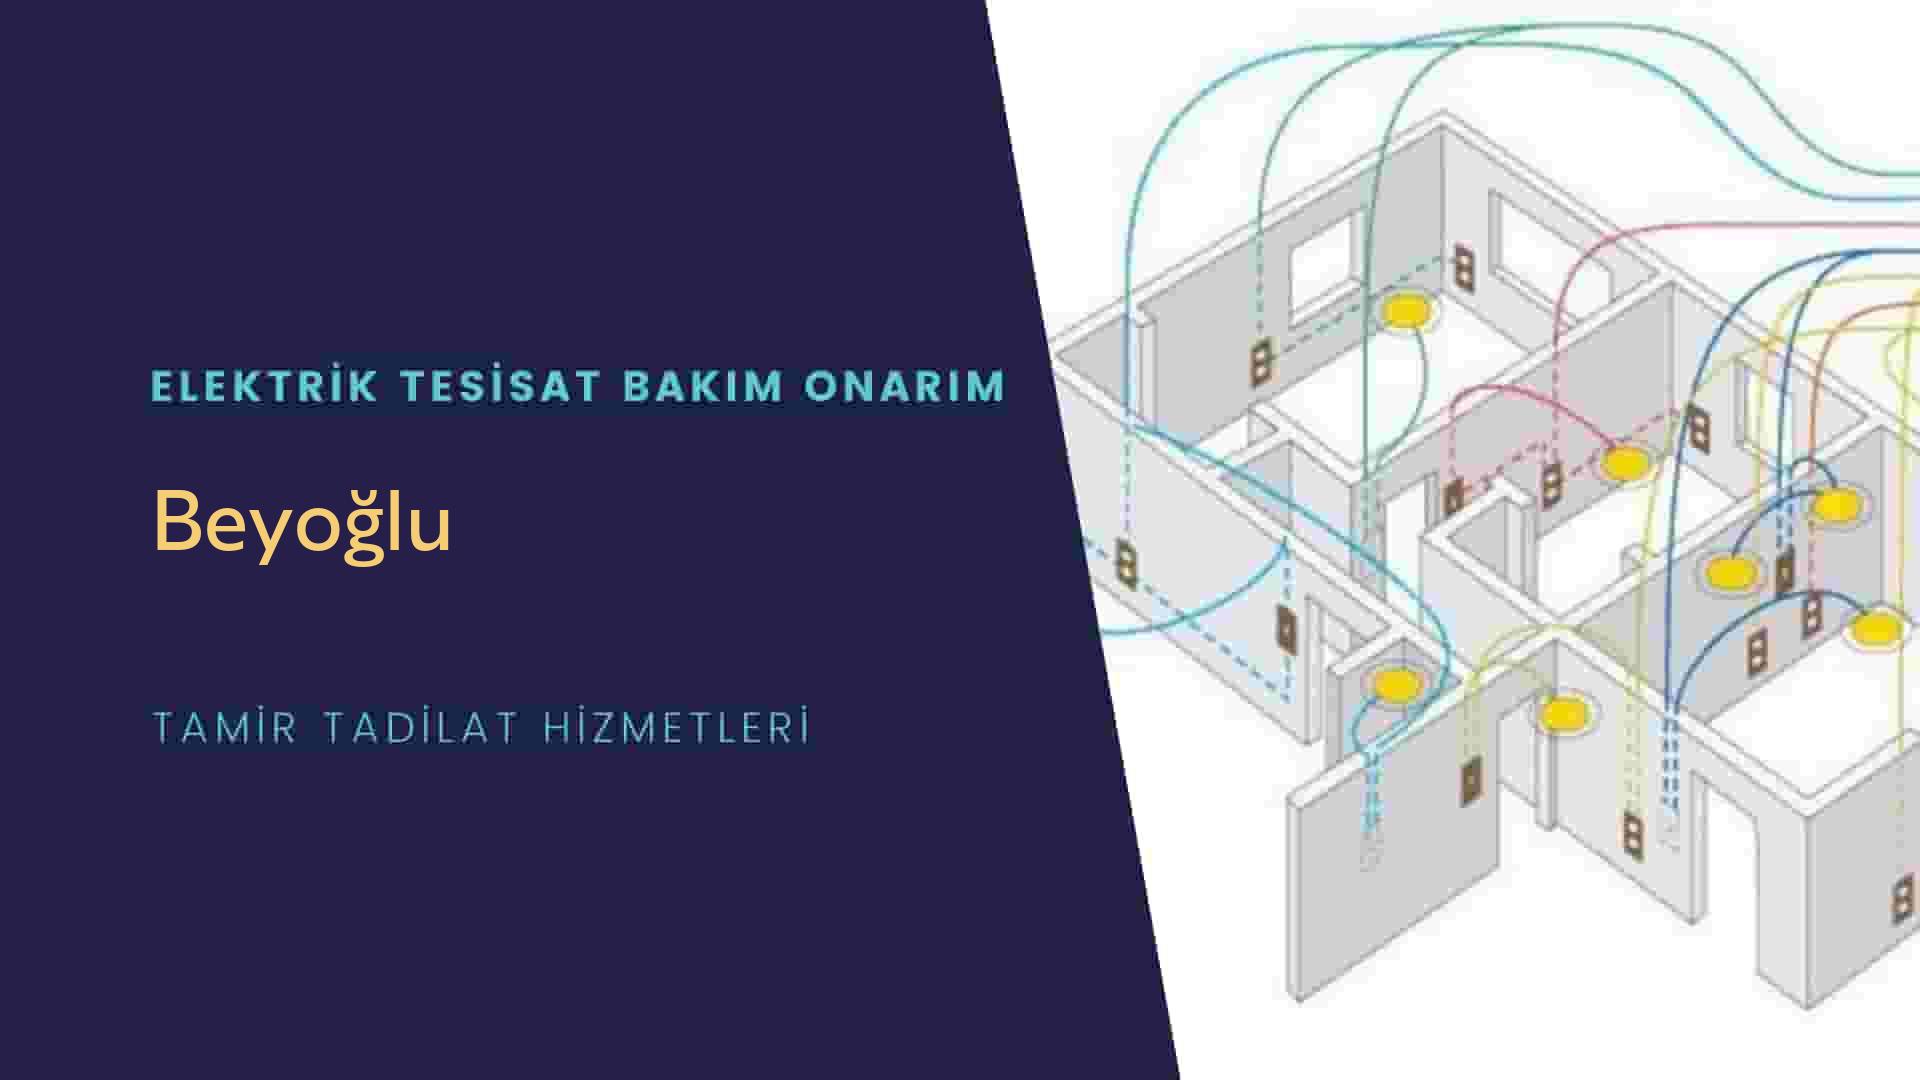 Beyoğlu'da elektrik tesisatı ustalarımı arıyorsunuz doğru adrestenizi Beyoğlu elektrik tesisatı ustalarımız 7/24 sizlere hizmet vermekten mutluluk duyar.